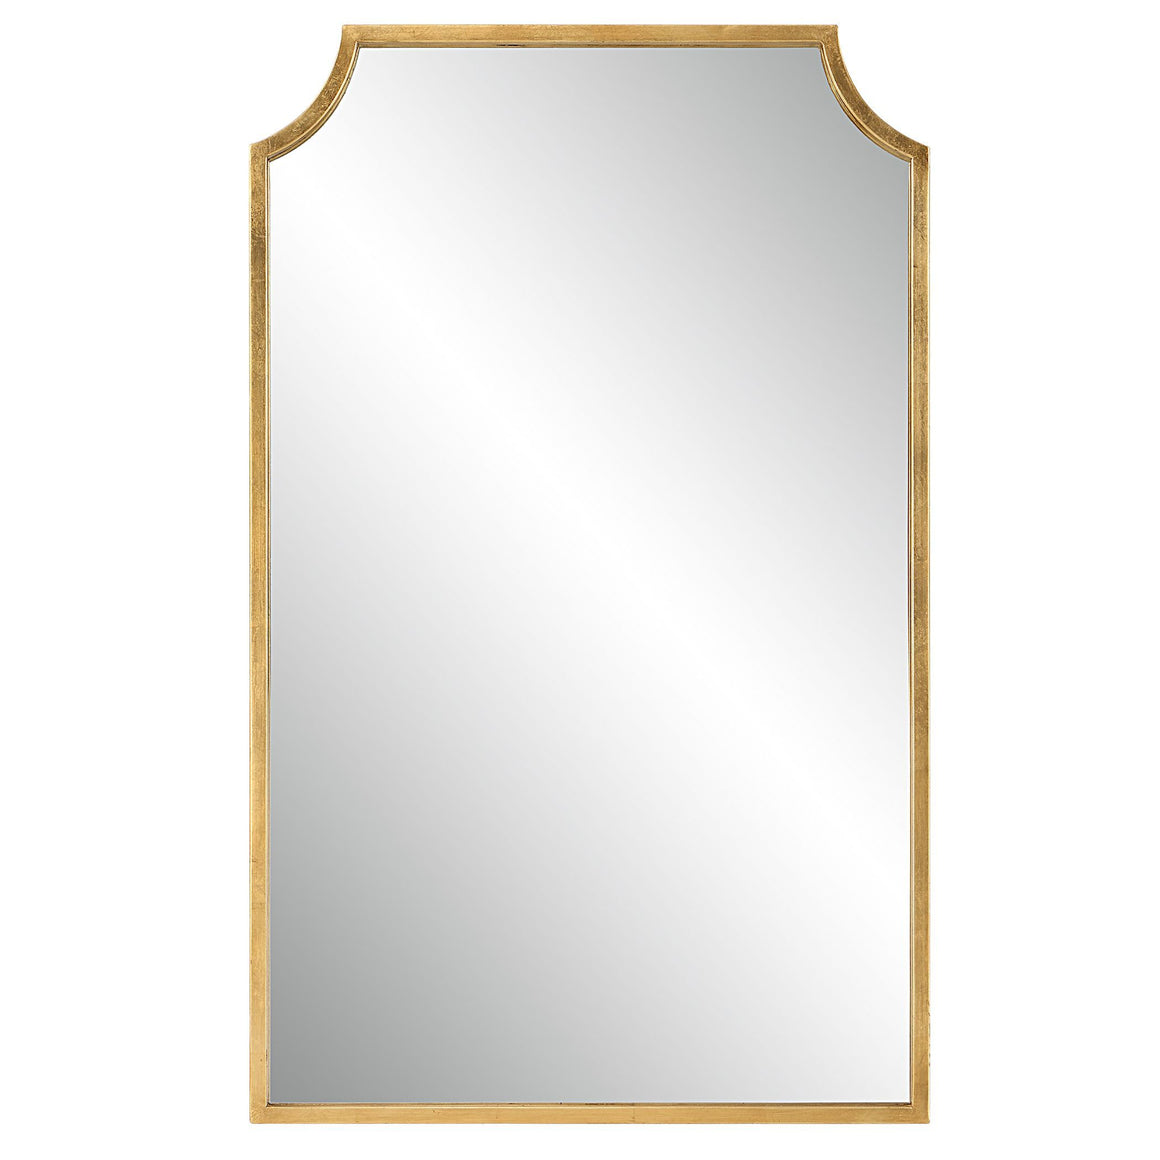 Gold Leaf Finish Mirror